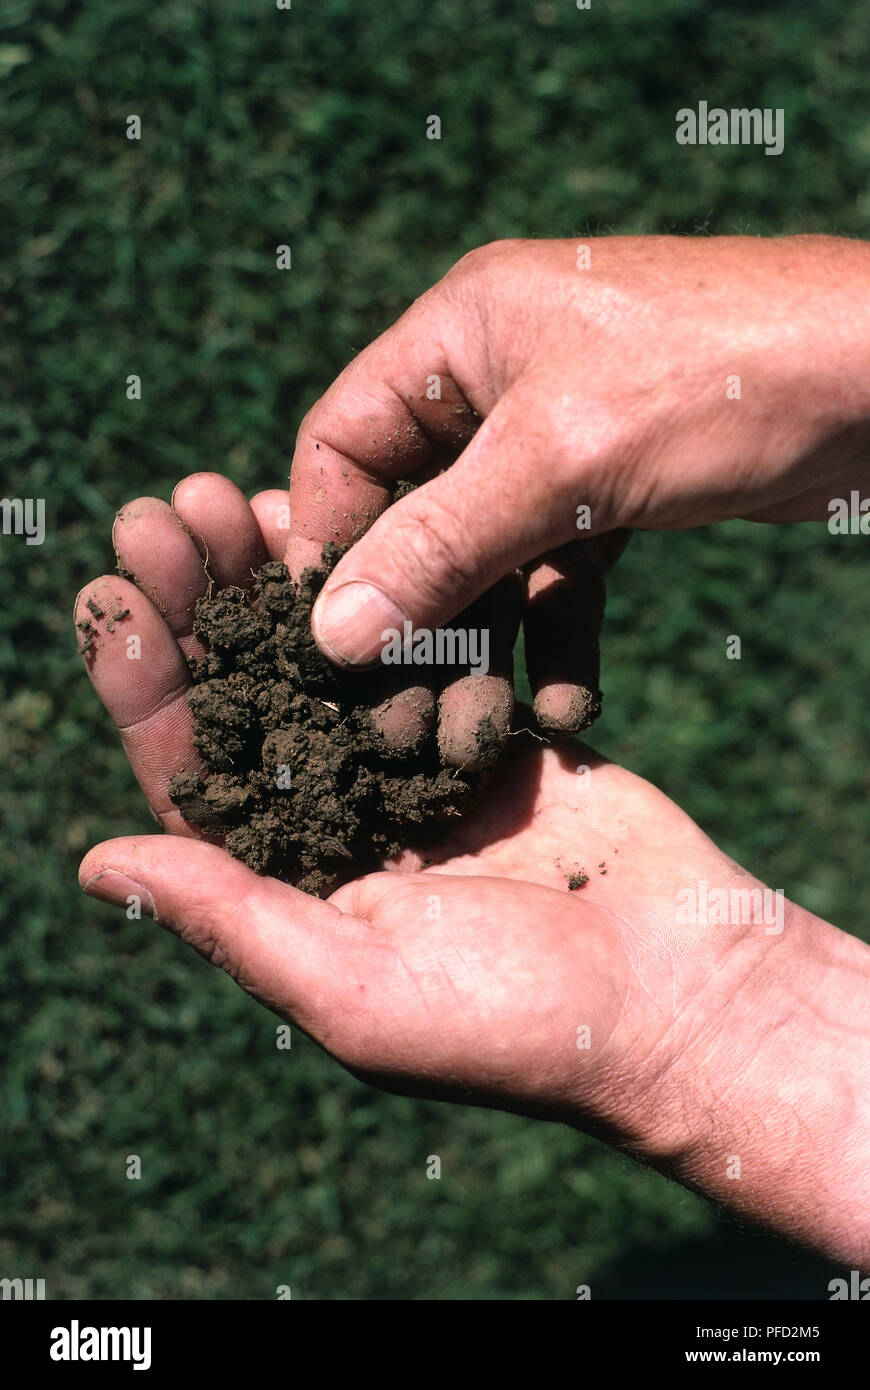 Man's hands feeling soil. Stock Photo